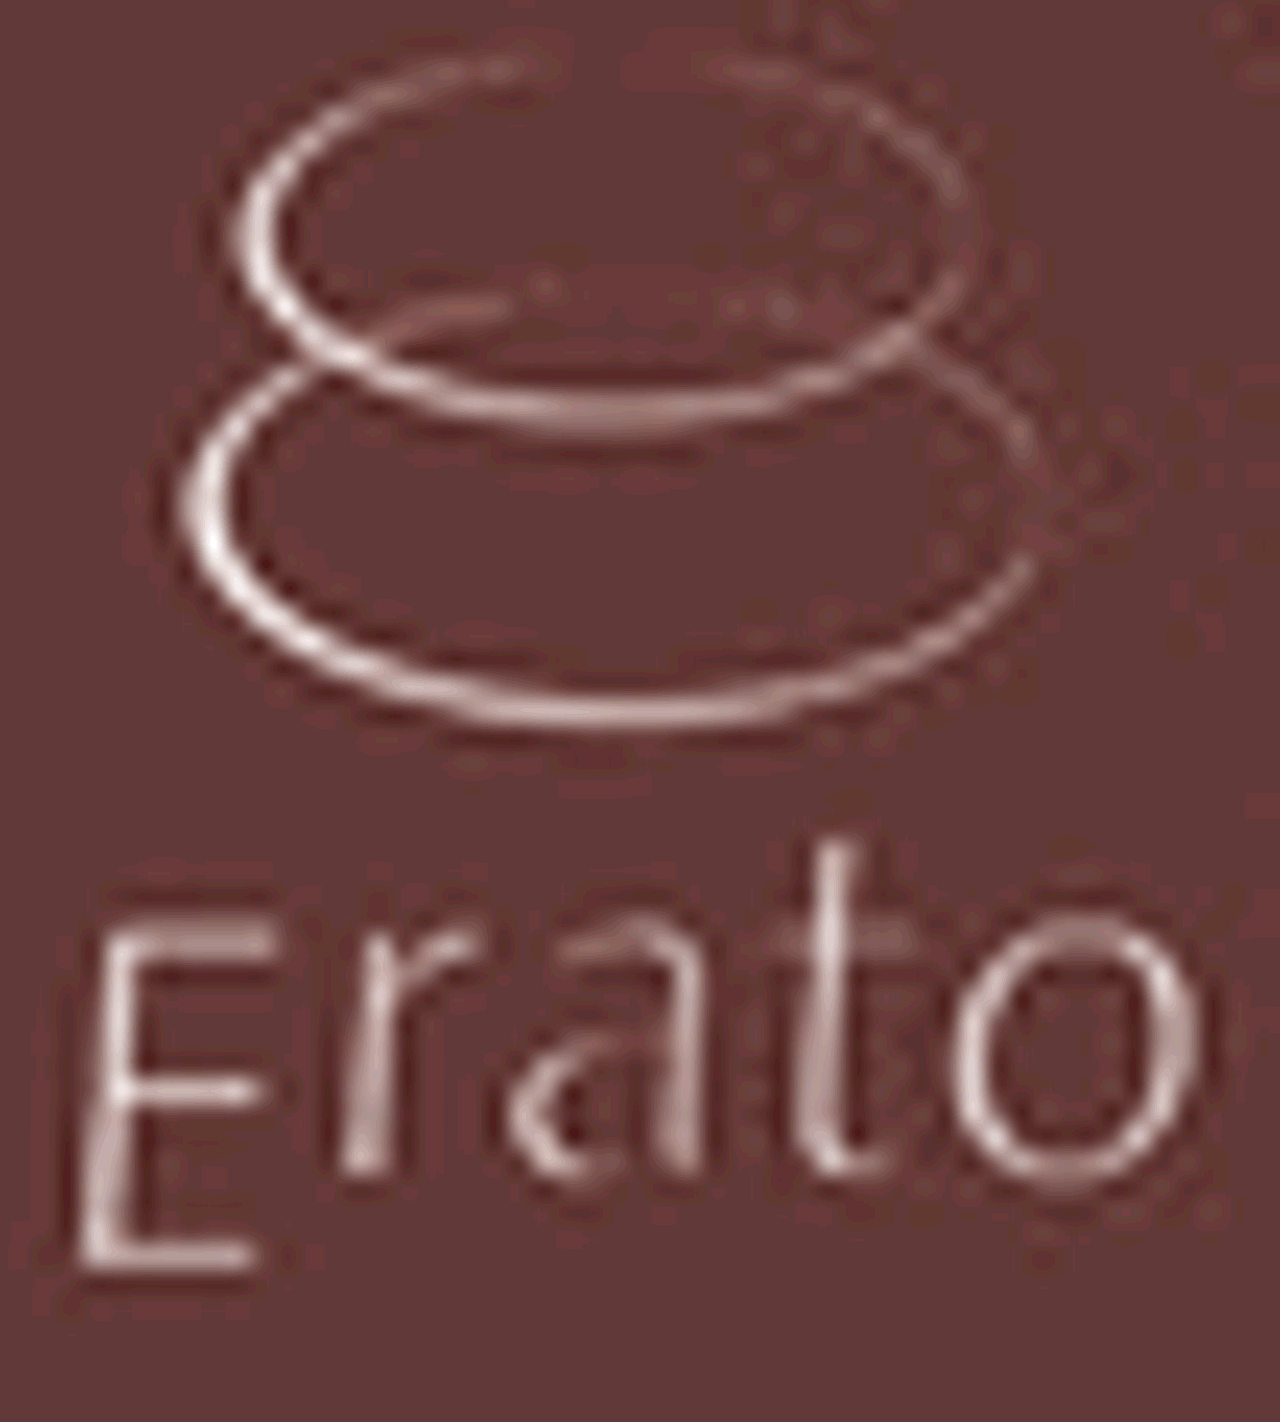 Erato Wine Bar & Grand Market